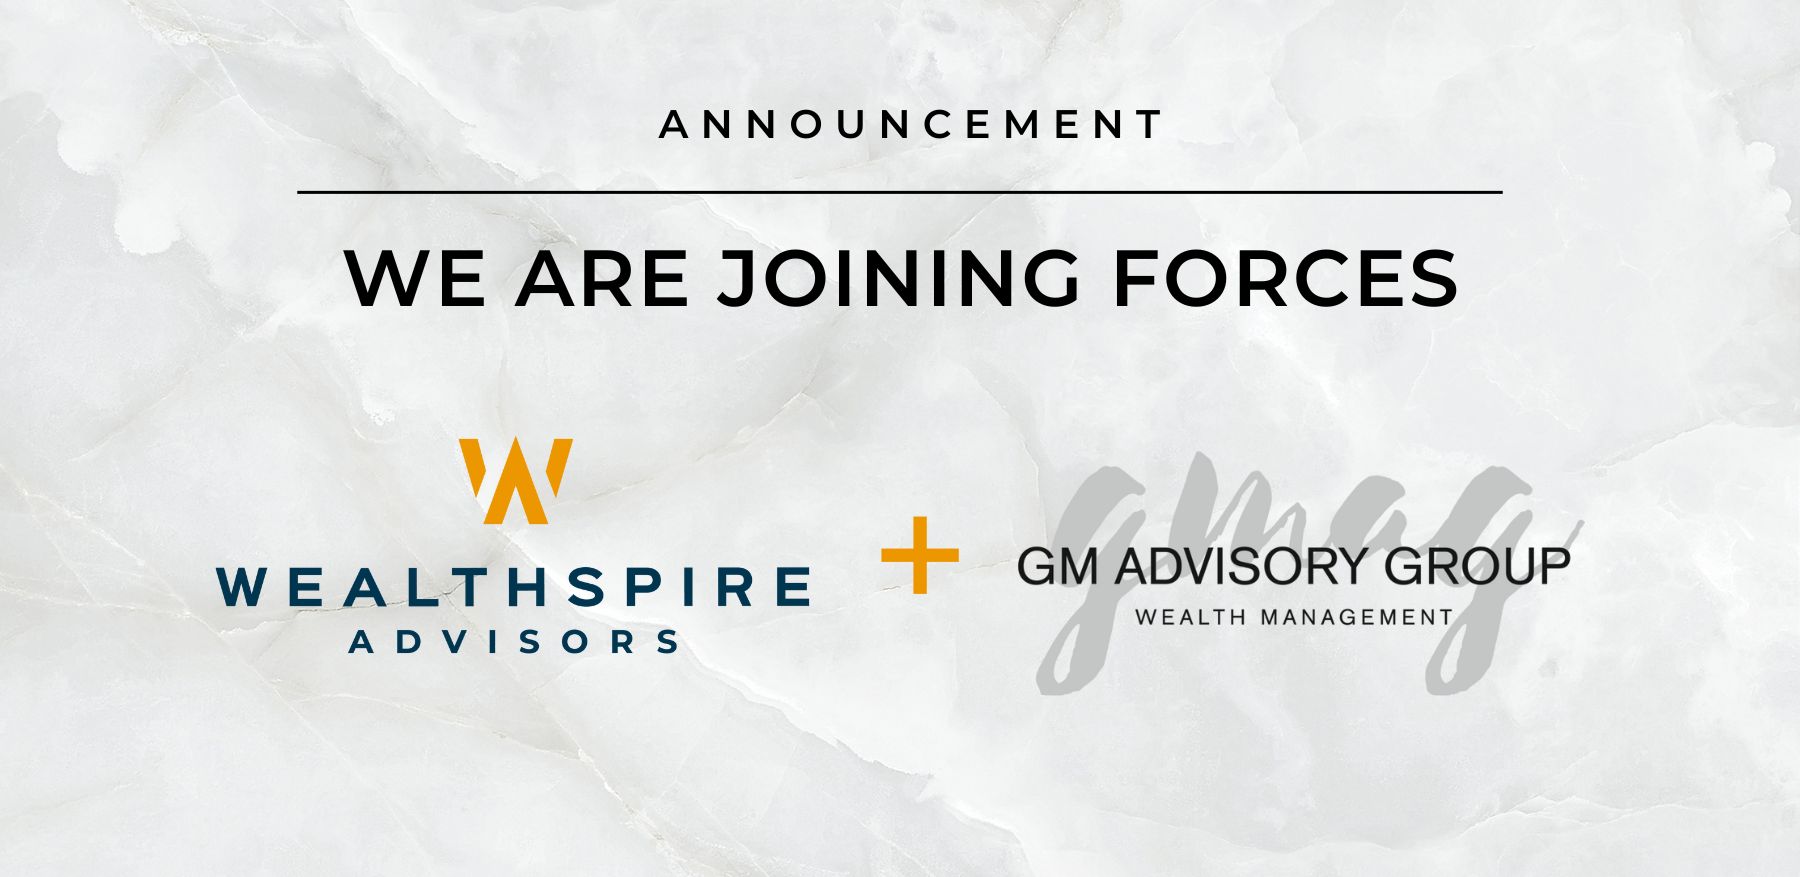 GMAG is joining Wealthspire Advisors LLC